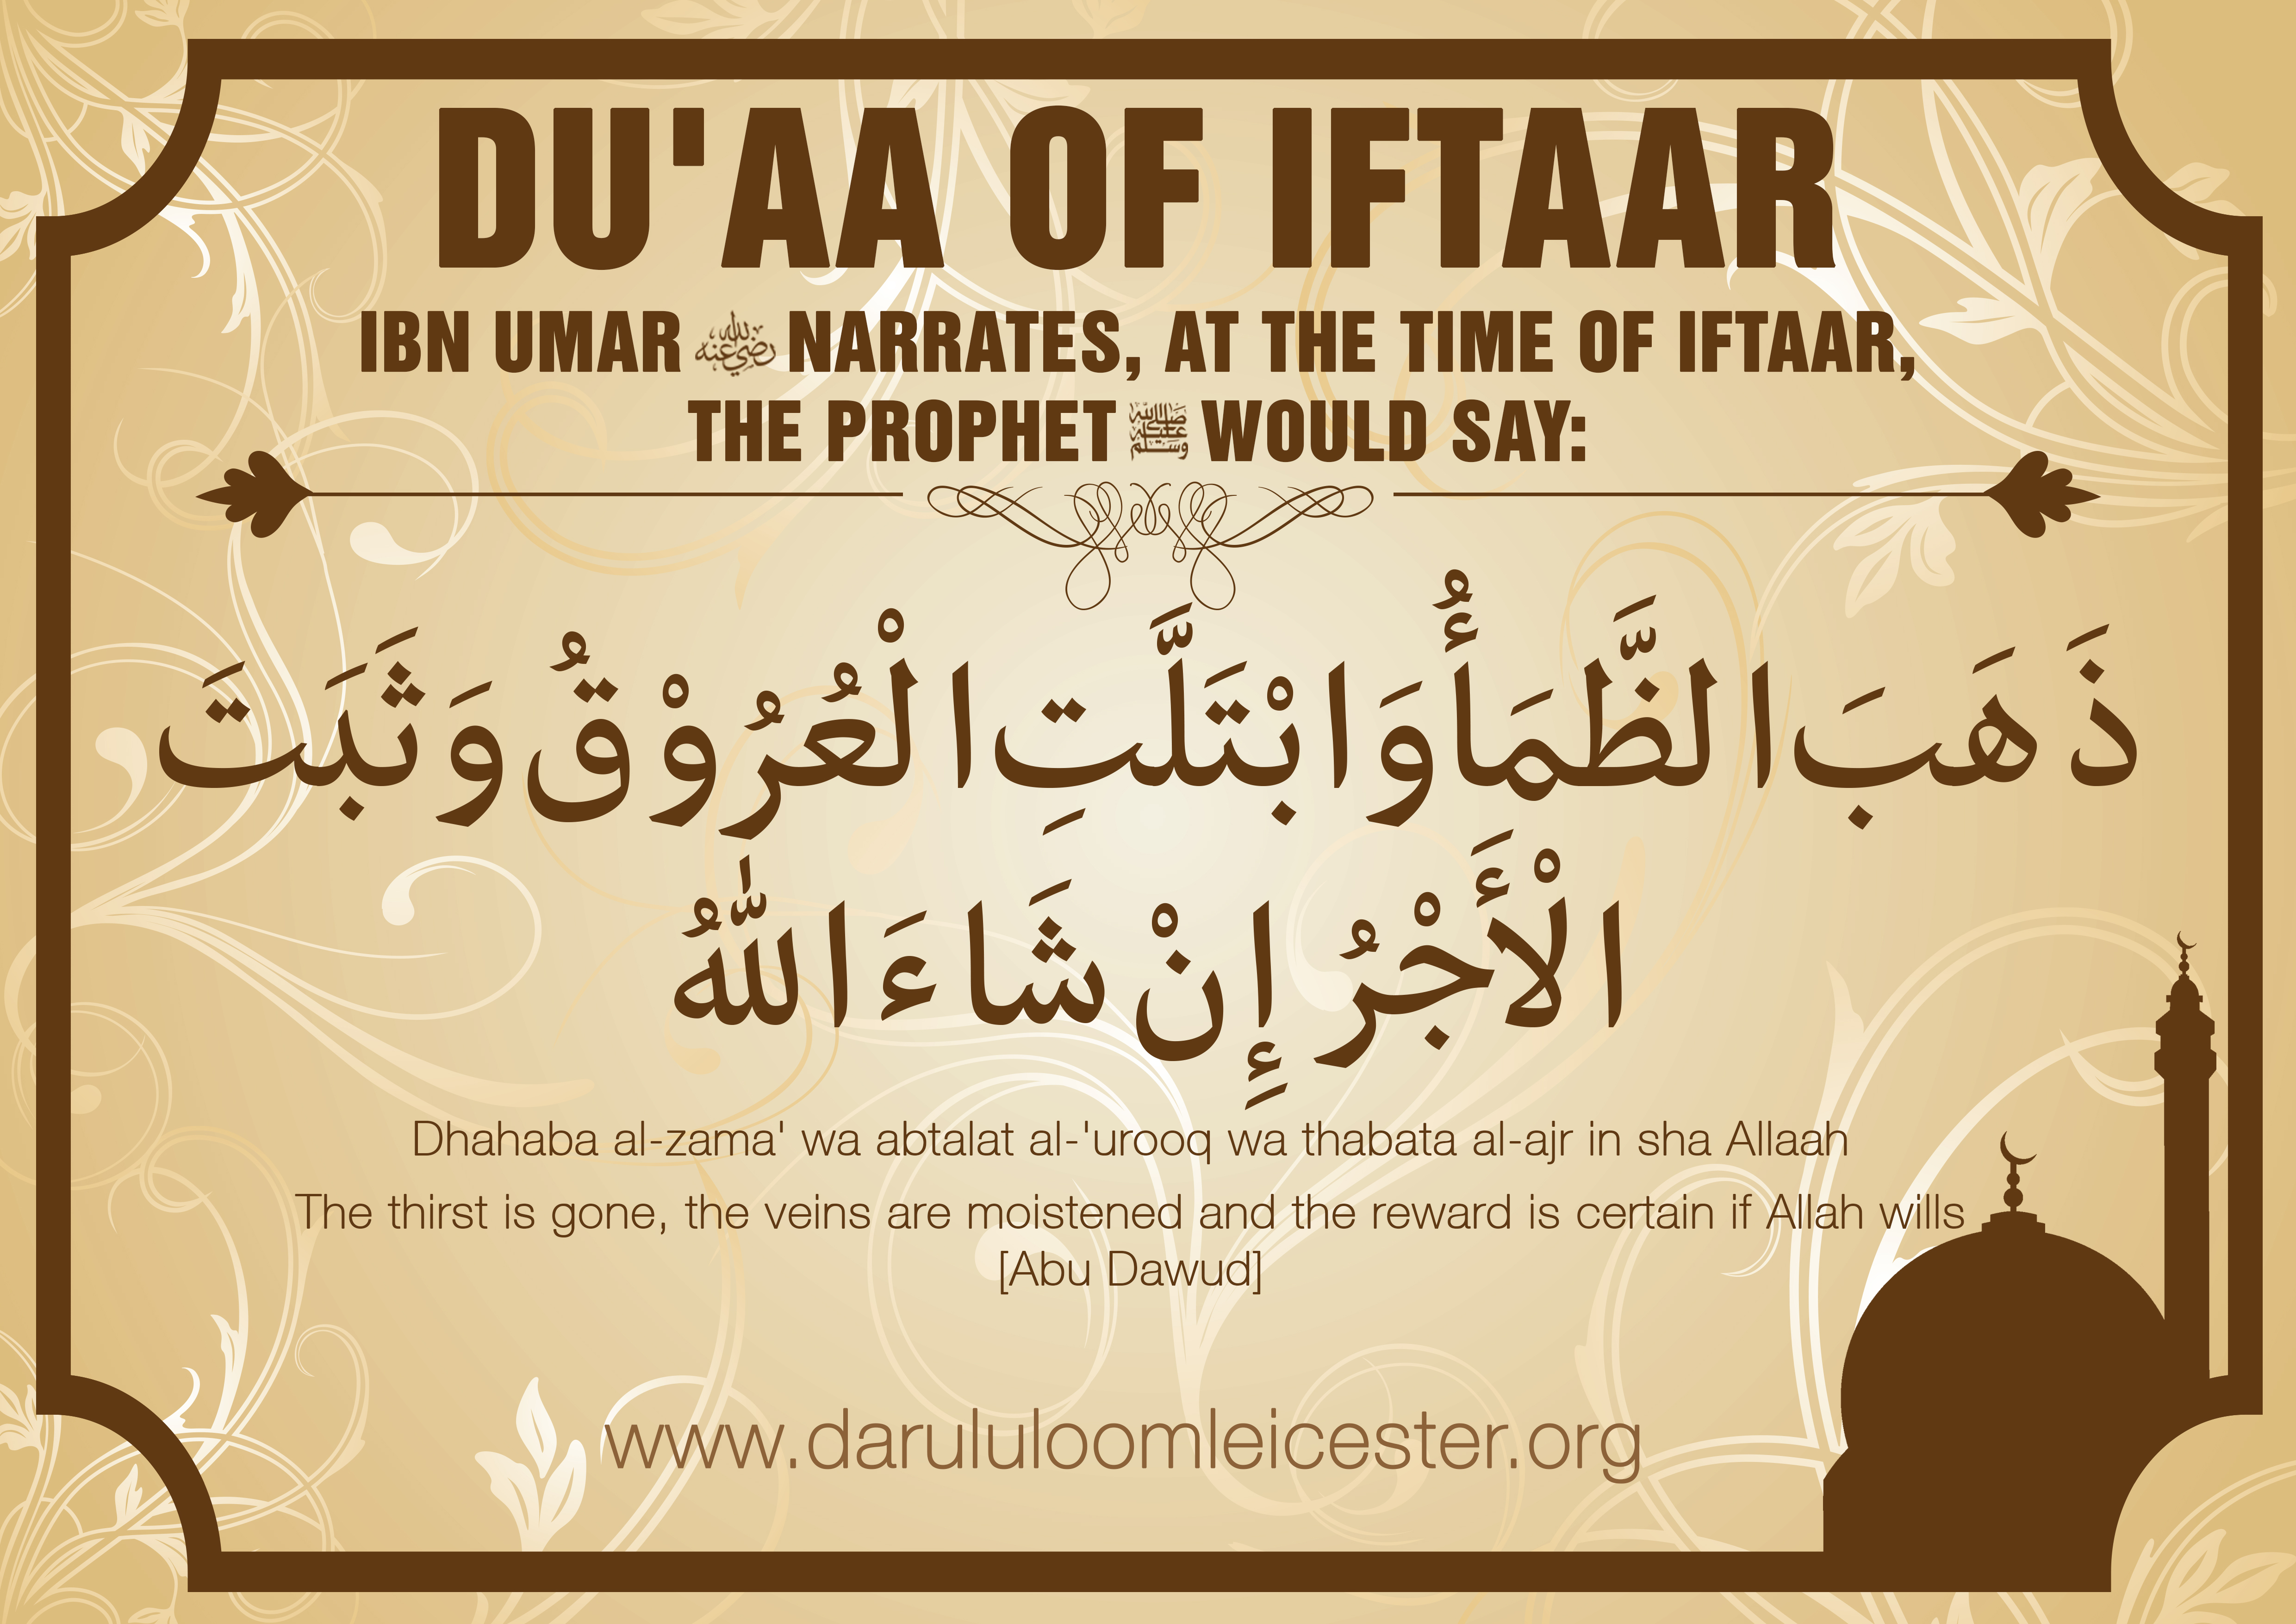 Du'aa' of Iftaar